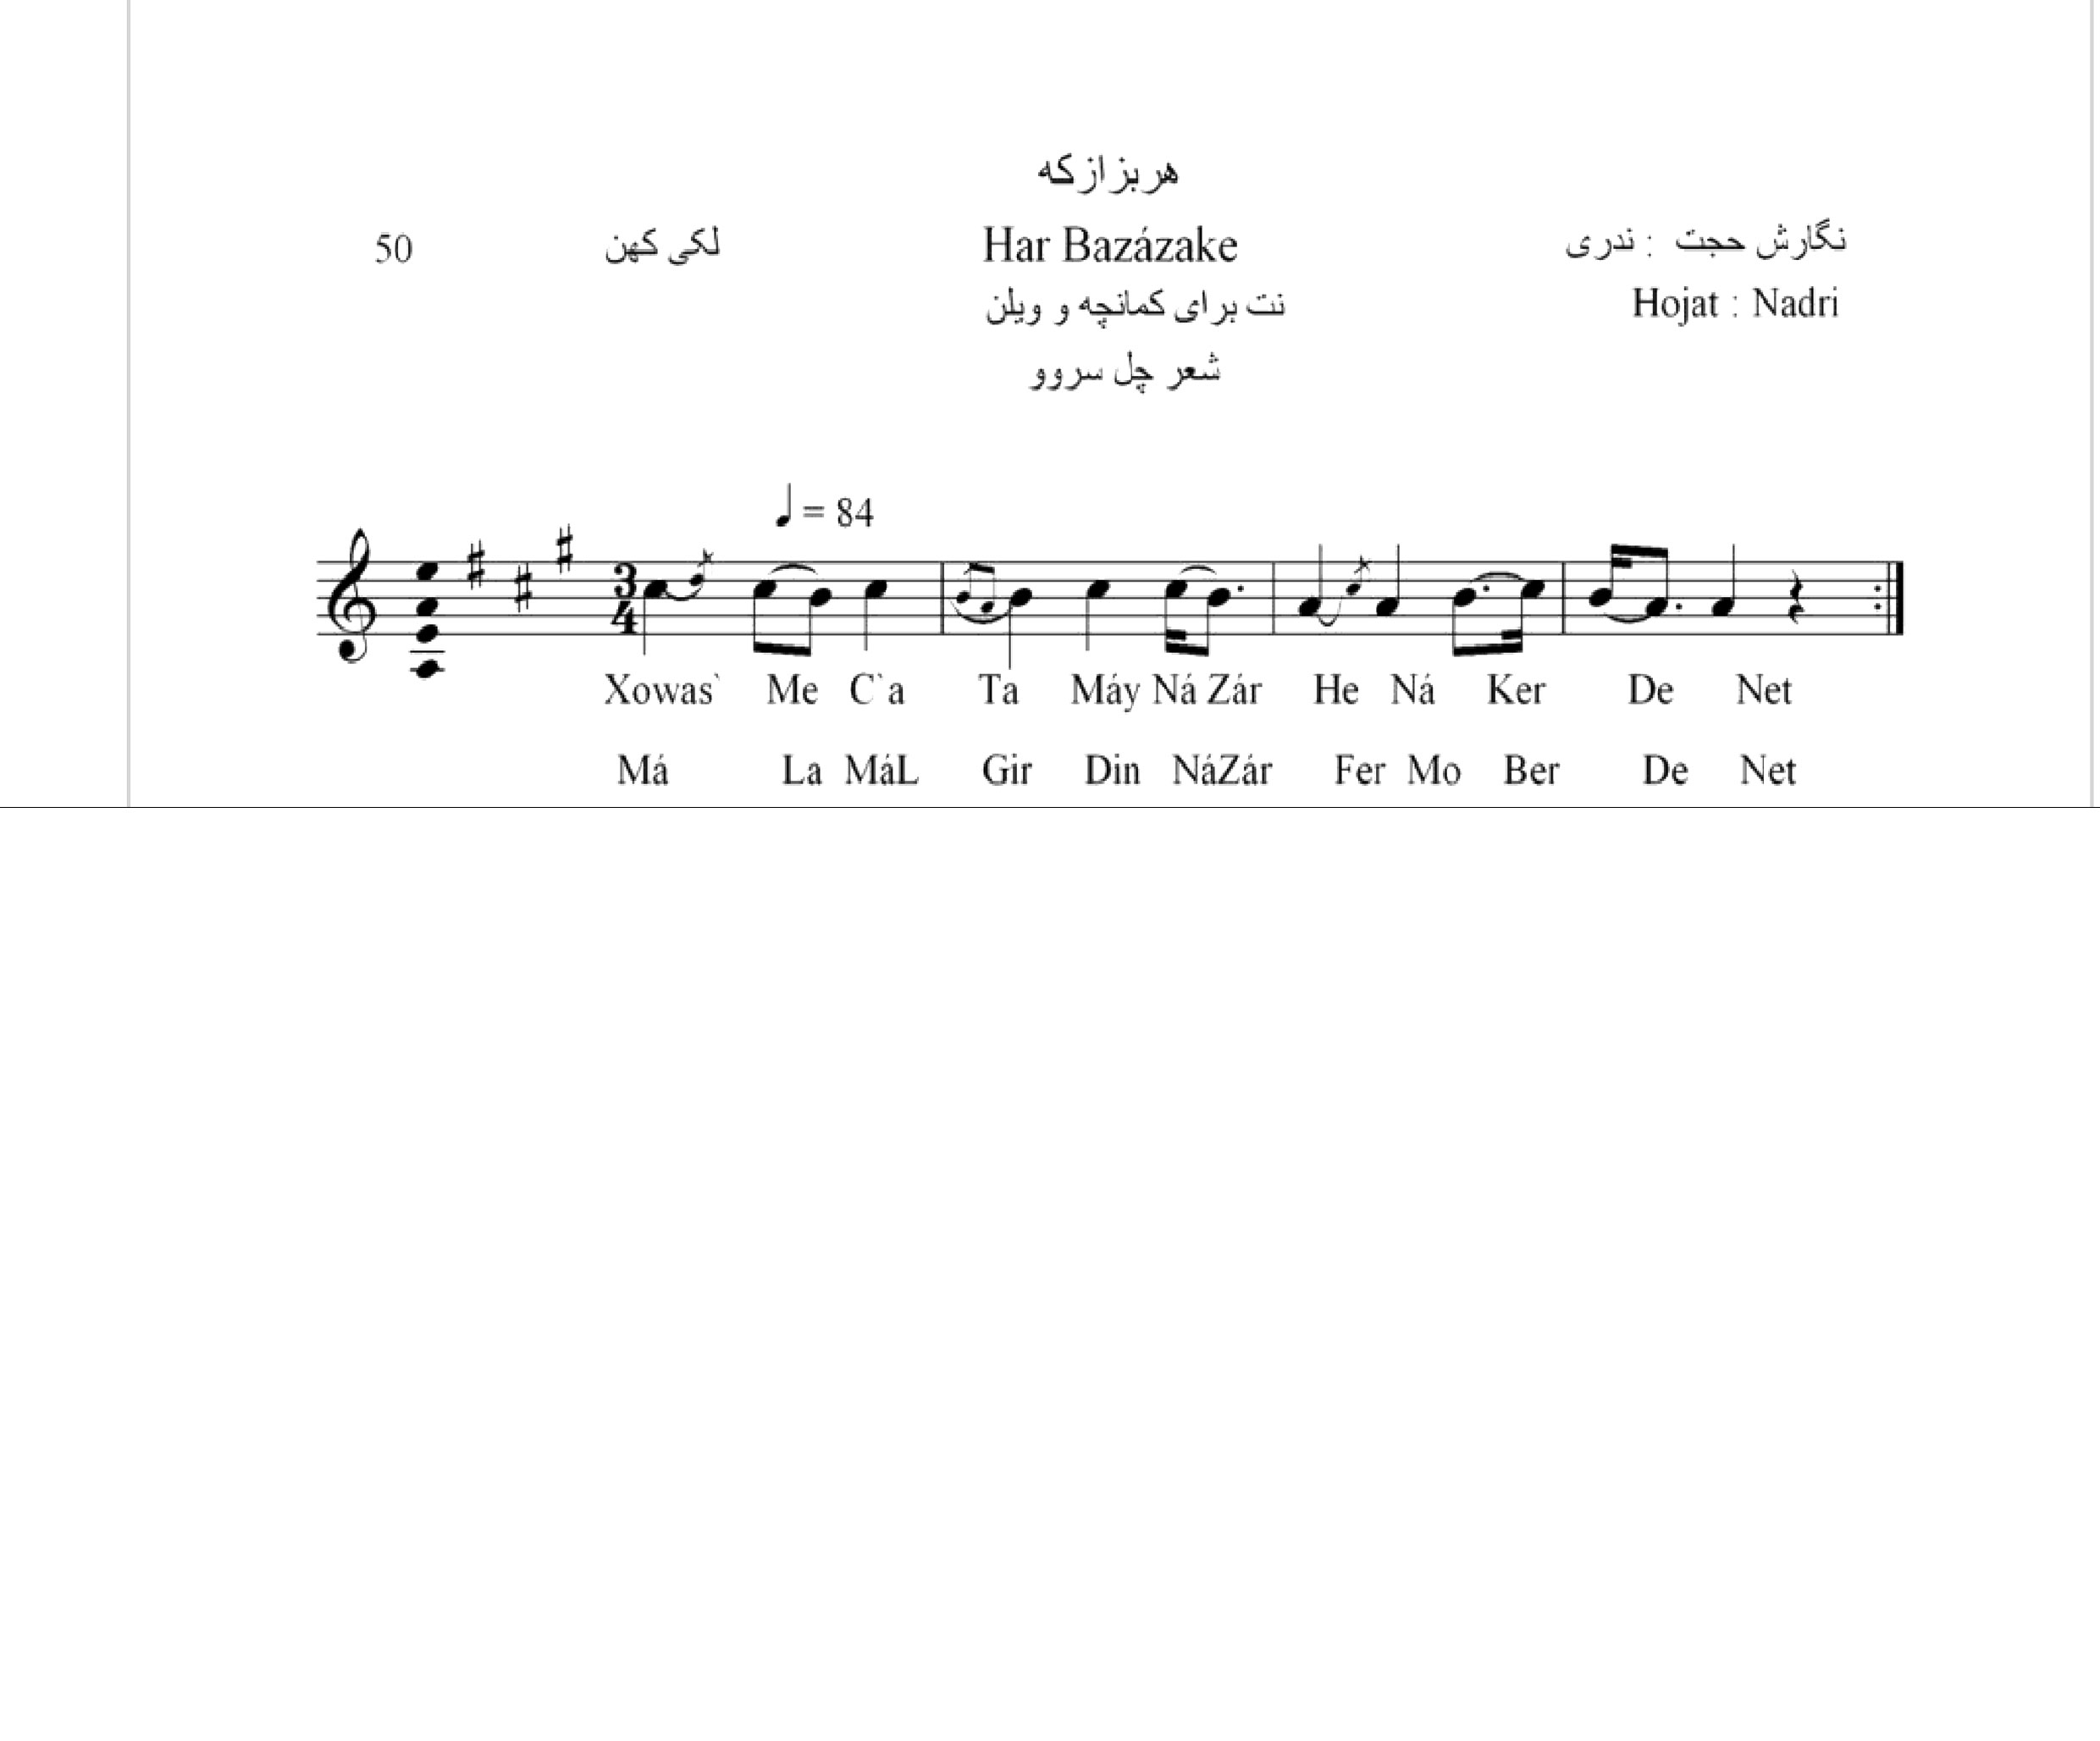 نت آهنگ هربزازکه محلی لری حجت اله ندری قابل اجرا با کمانچه و دیگر سازها